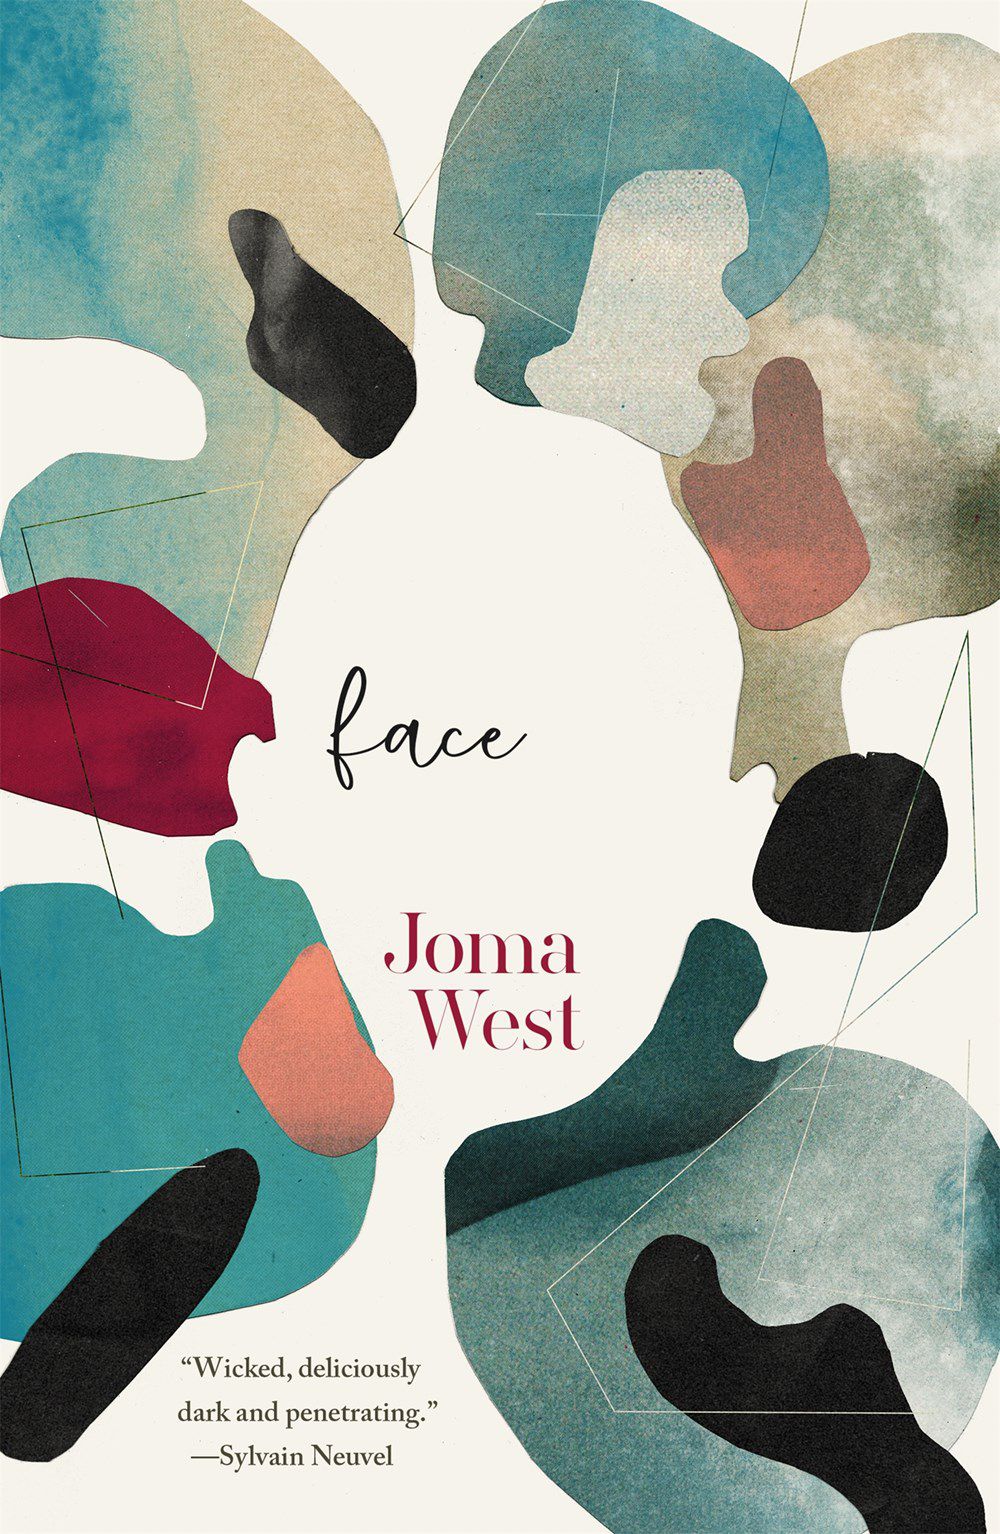 Immagine di copertina per Face di Joma West, una combinazione astratta di colori che crea la forma di un viso al centro.